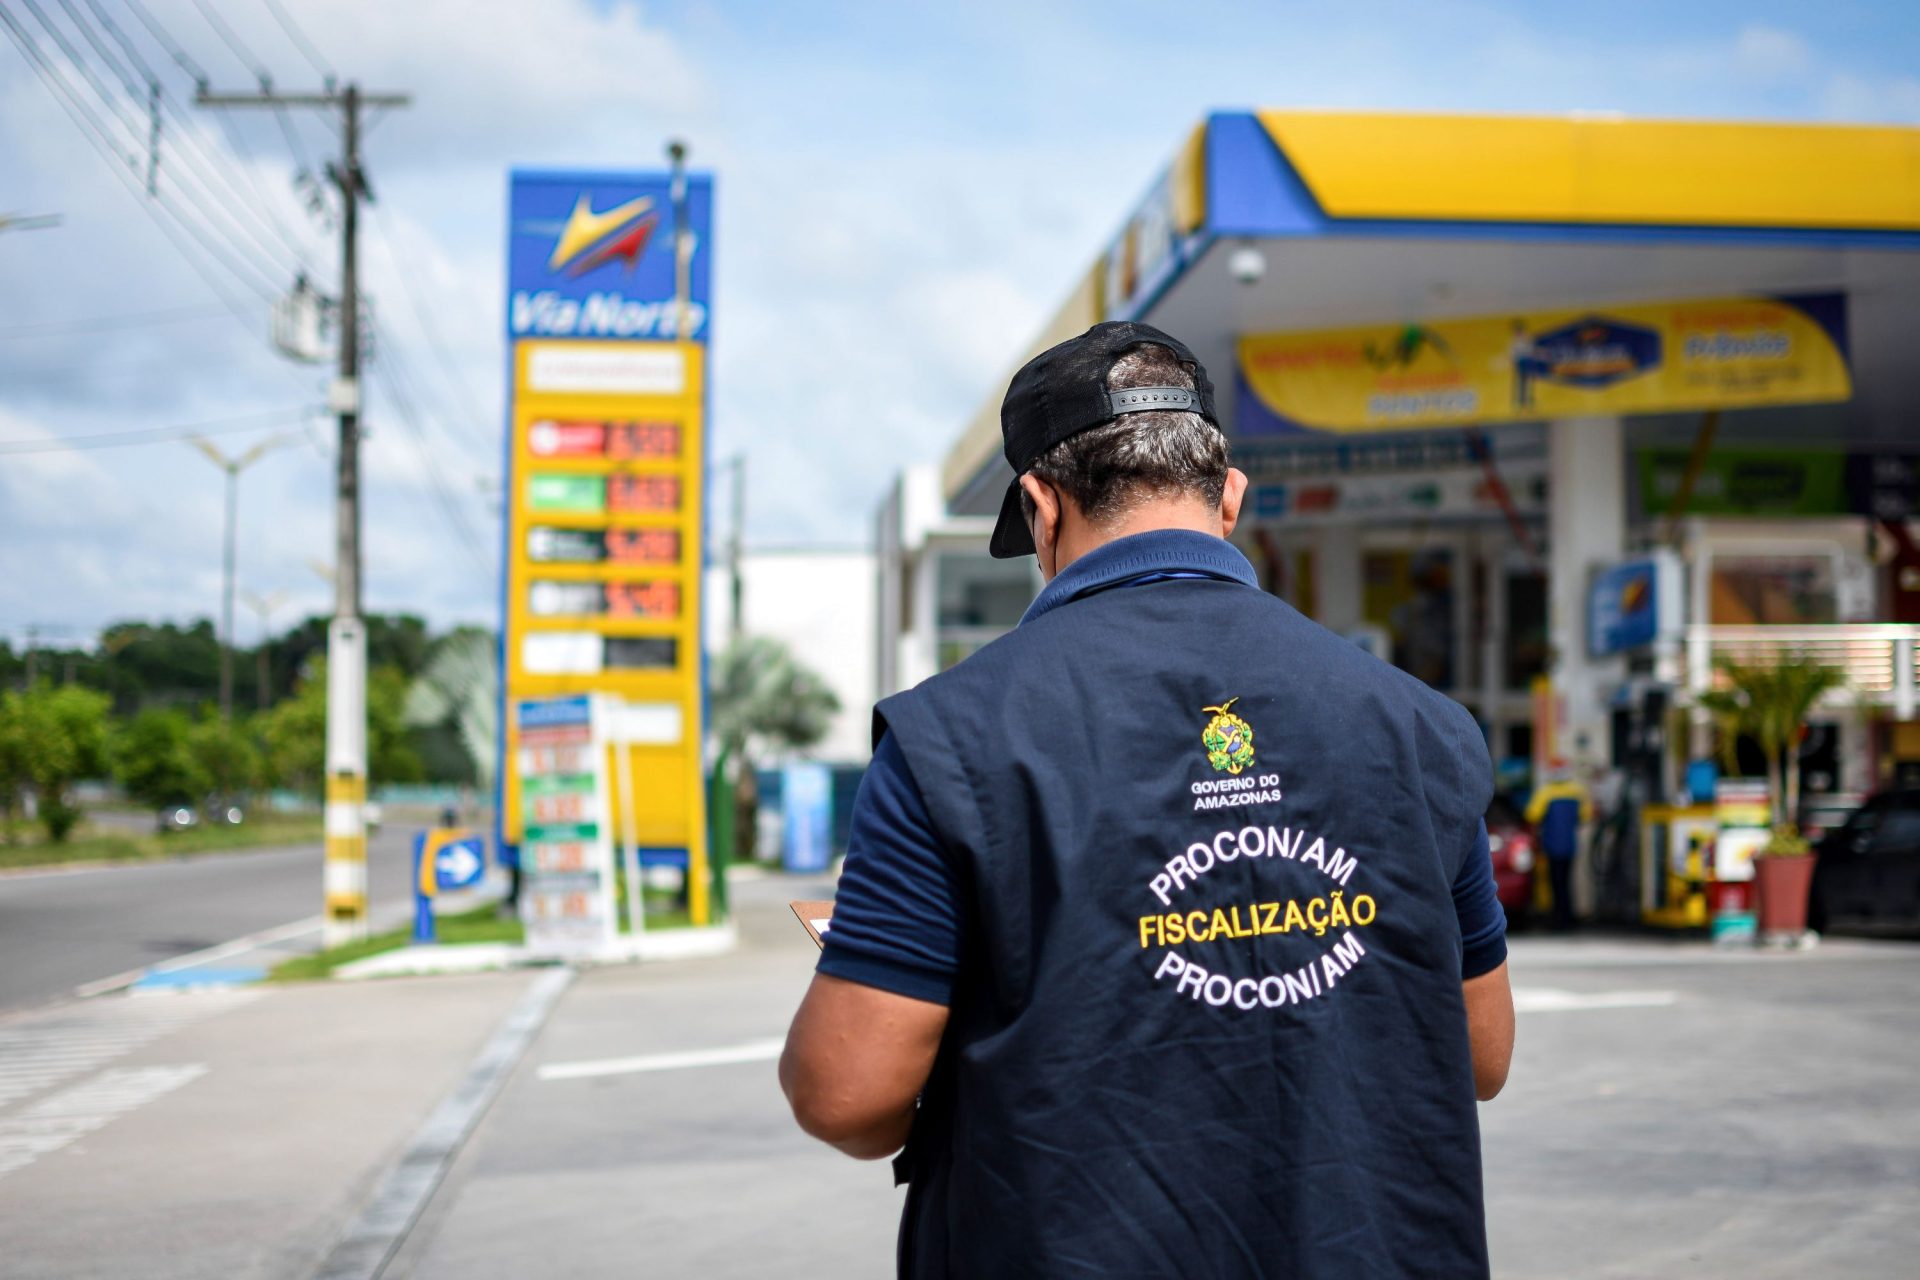 Fiscalização do Procon-AM ocorre após relato de aumento de preço repentino de comubustíveis em Manaus - Foto: João Pedro/Procon-AM